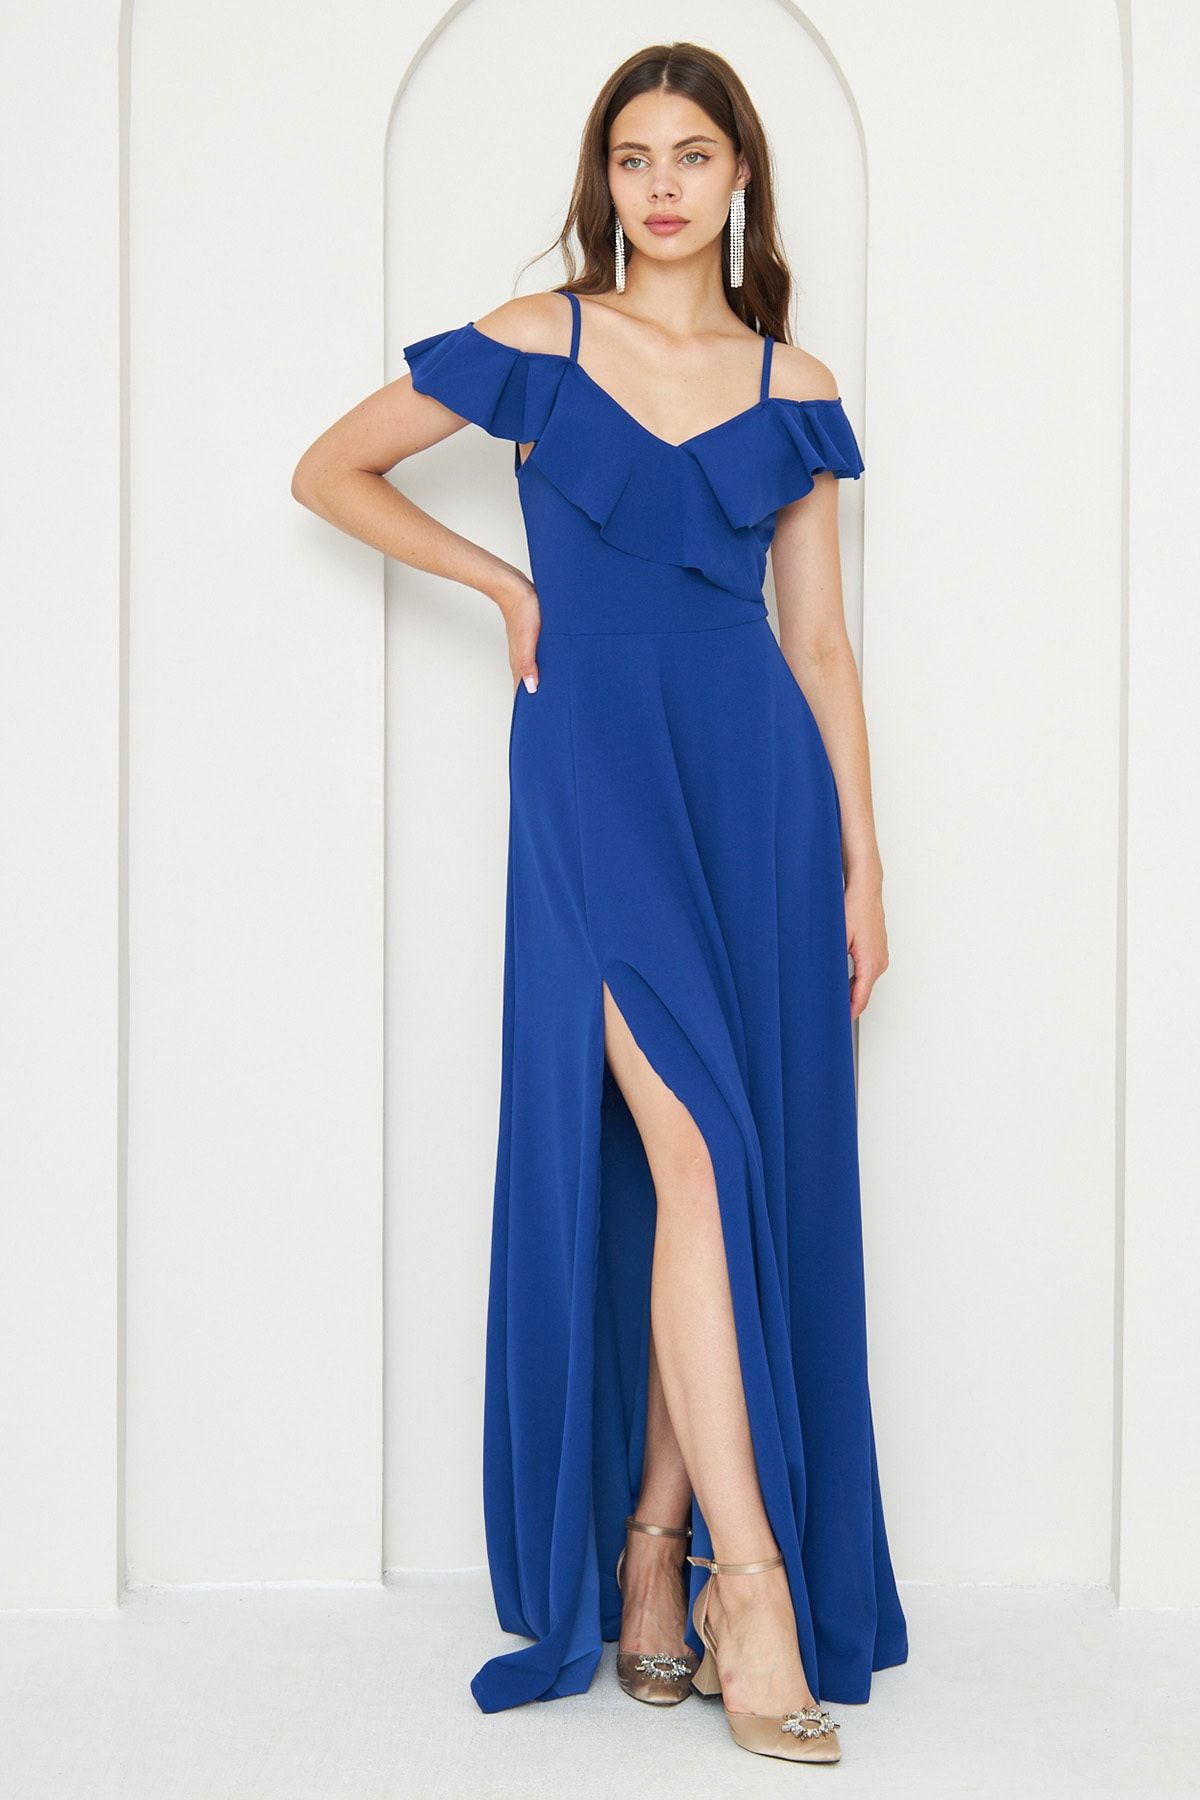 lovebox Esnek Krep Kumaş Ince Askılı Volanlı Yaka Detaylı Yırtmaçlı Uzun Mavi Abiye Elbise 582190